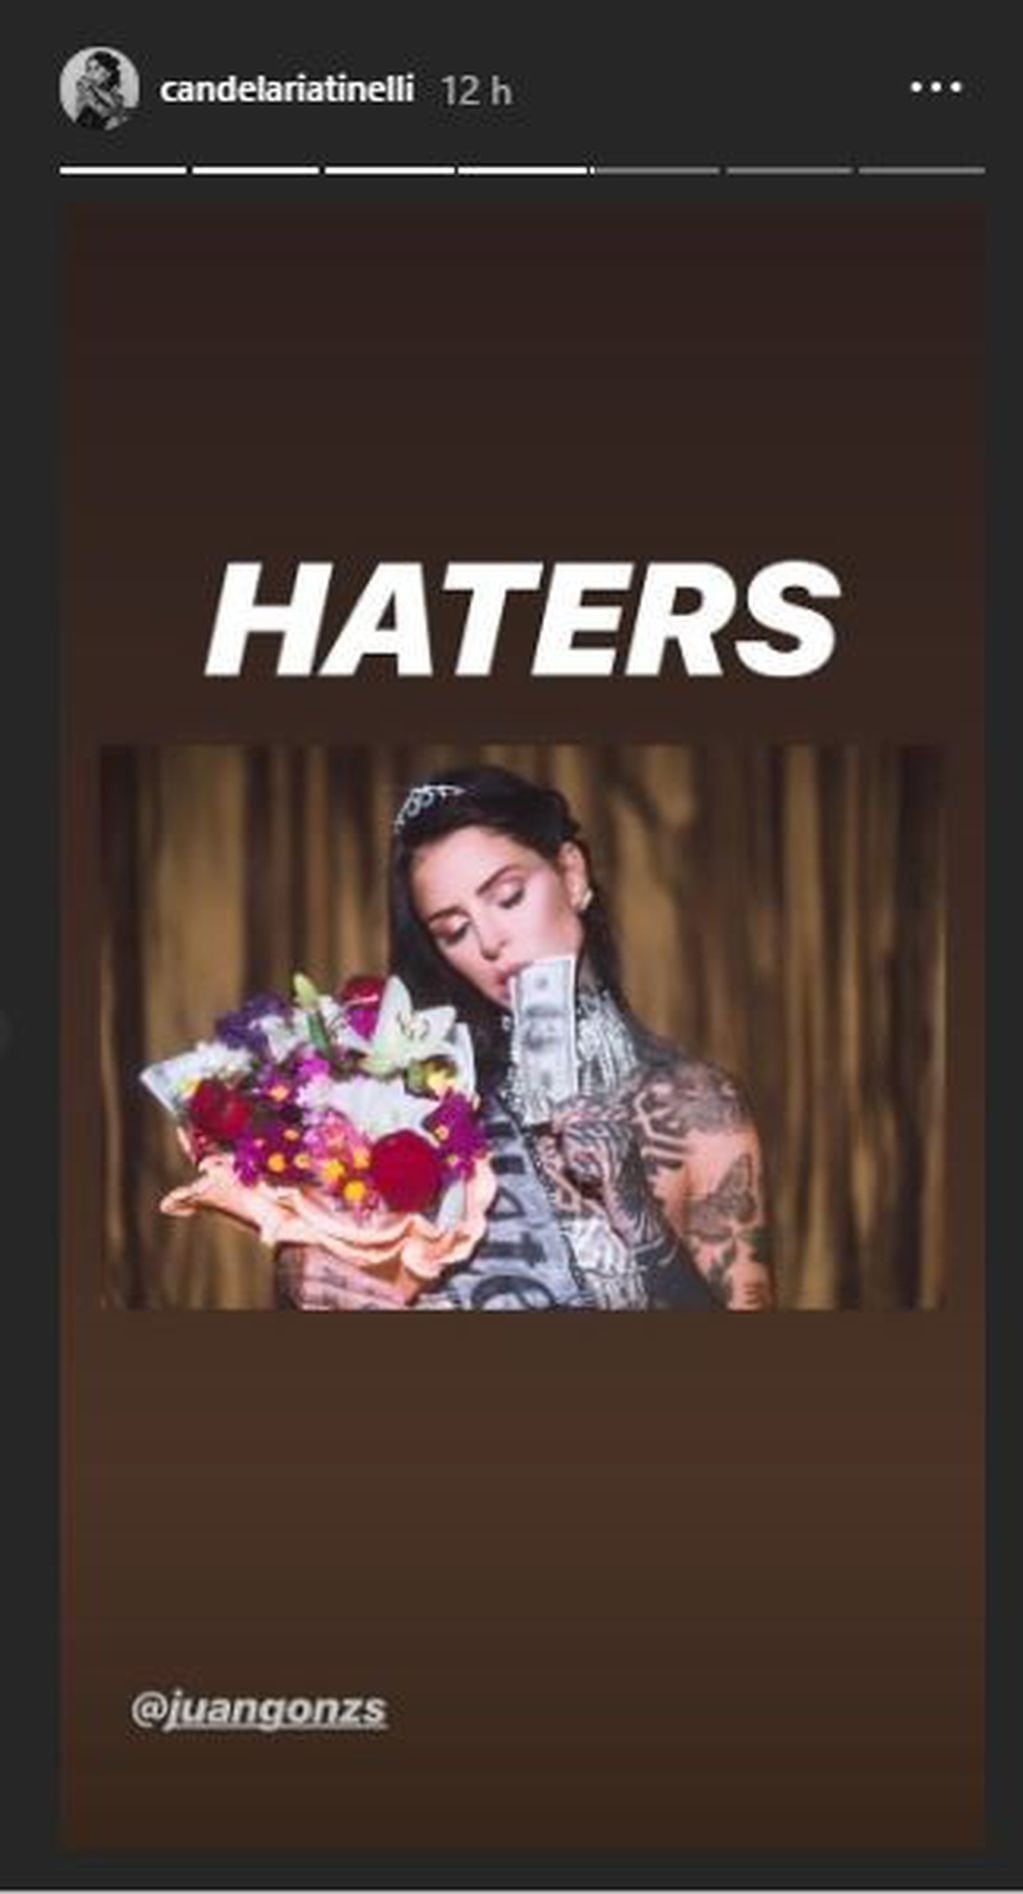 Cande Tinelli adelantó en Instagram lo que será el videoclip del tema "Haters"